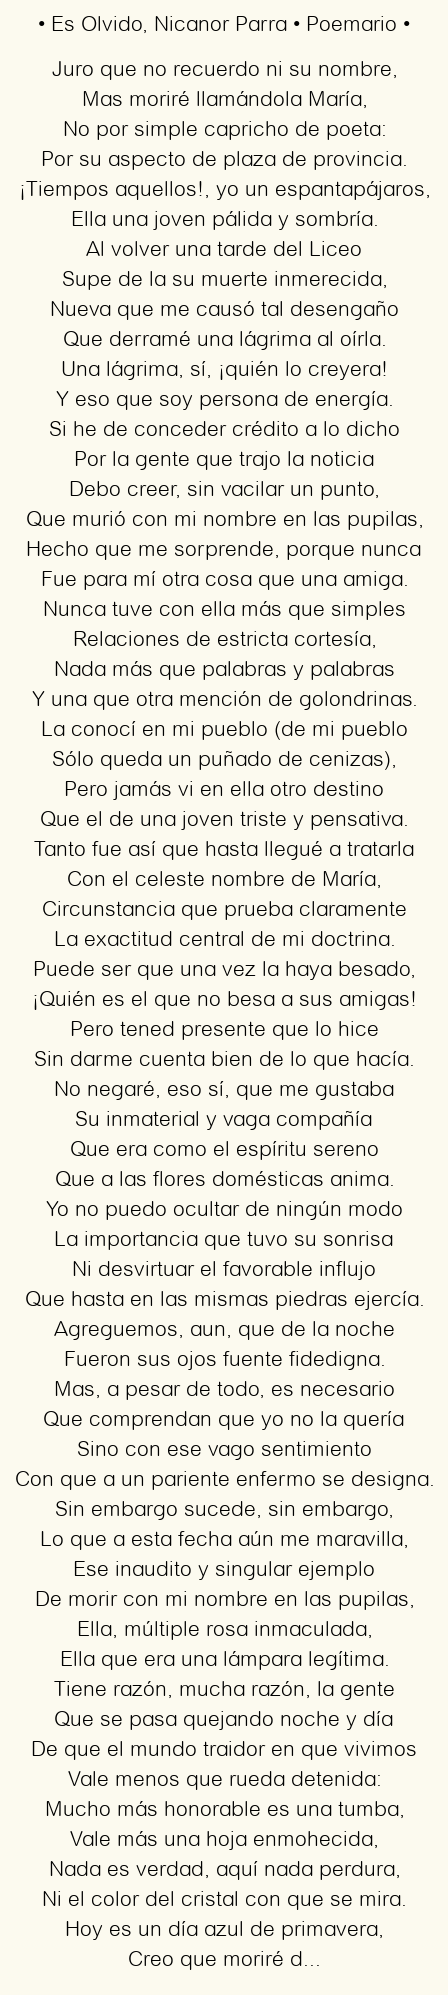 Imagen con el poema Es Olvido, por Nicanor Parra